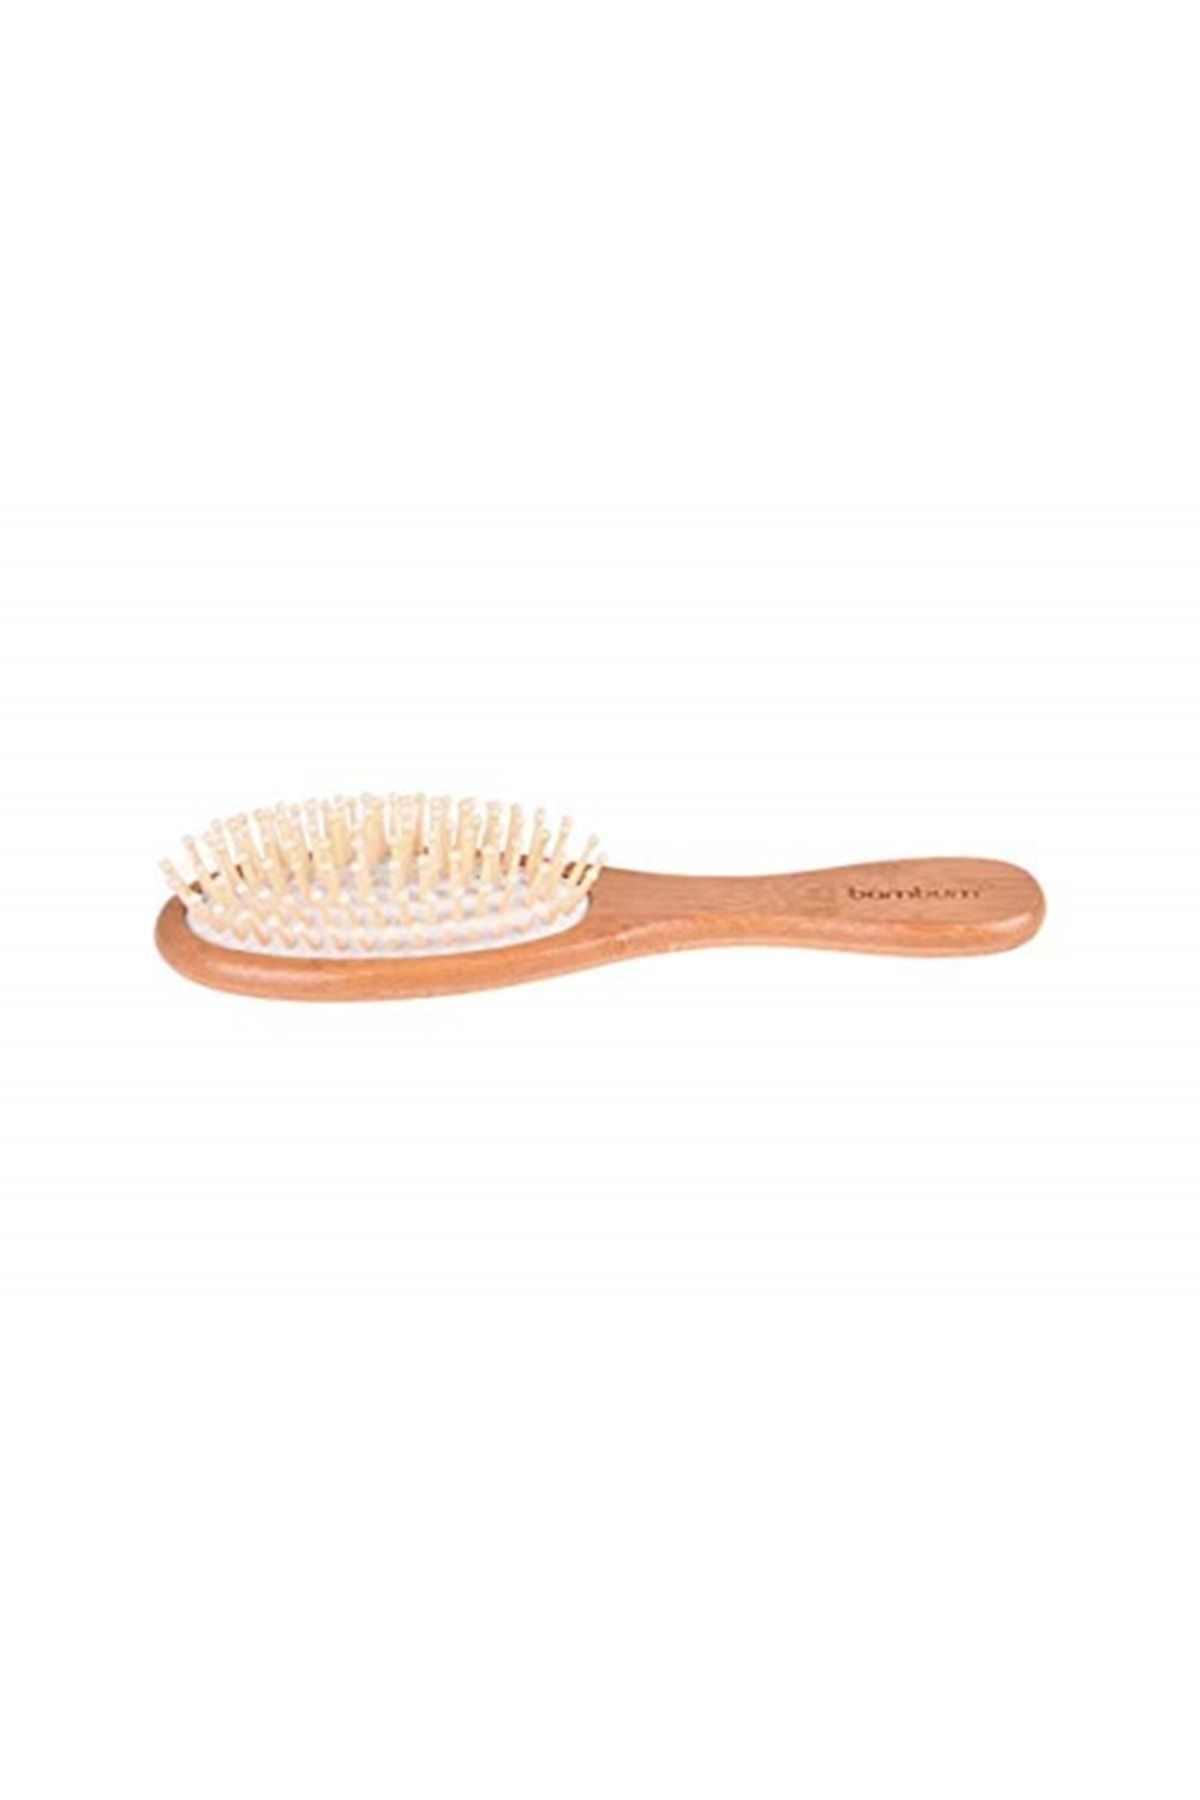 Bambum Marka: Lenger - Saç Fırçası Kategori: Banyo Düzenleyici